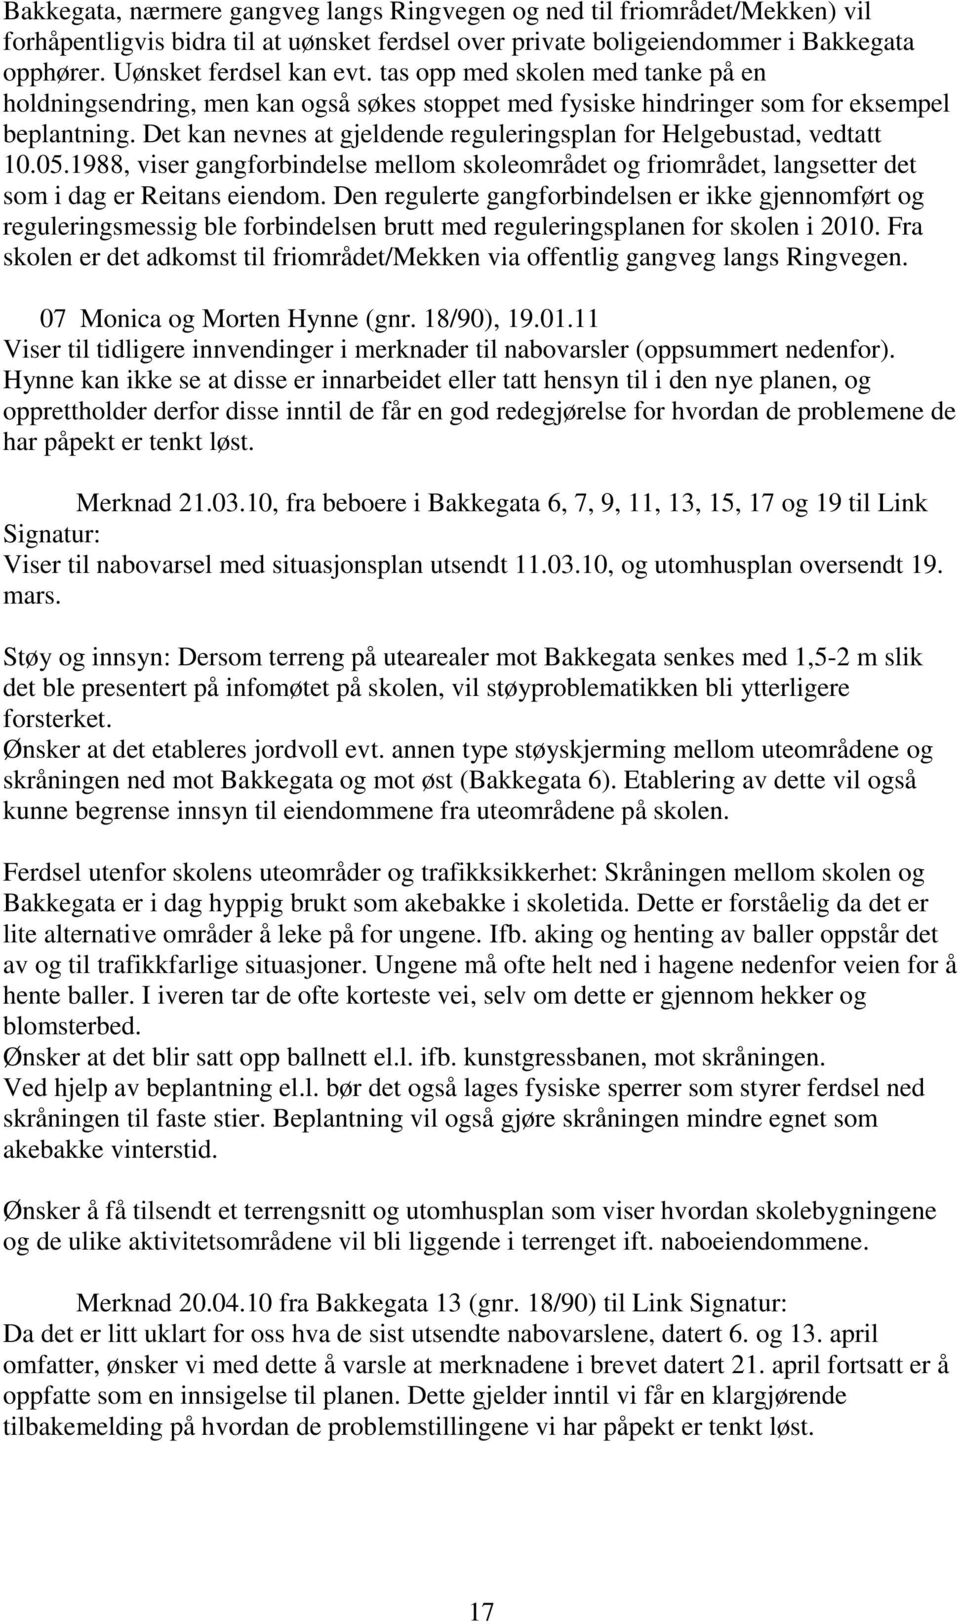 Det kan nevnes at gjeldende reguleringsplan for Helgebustad, vedtatt 10.05.1988, viser gangforbindelse mellom skoleområdet og friområdet, langsetter det som i dag er Reitans eiendom.